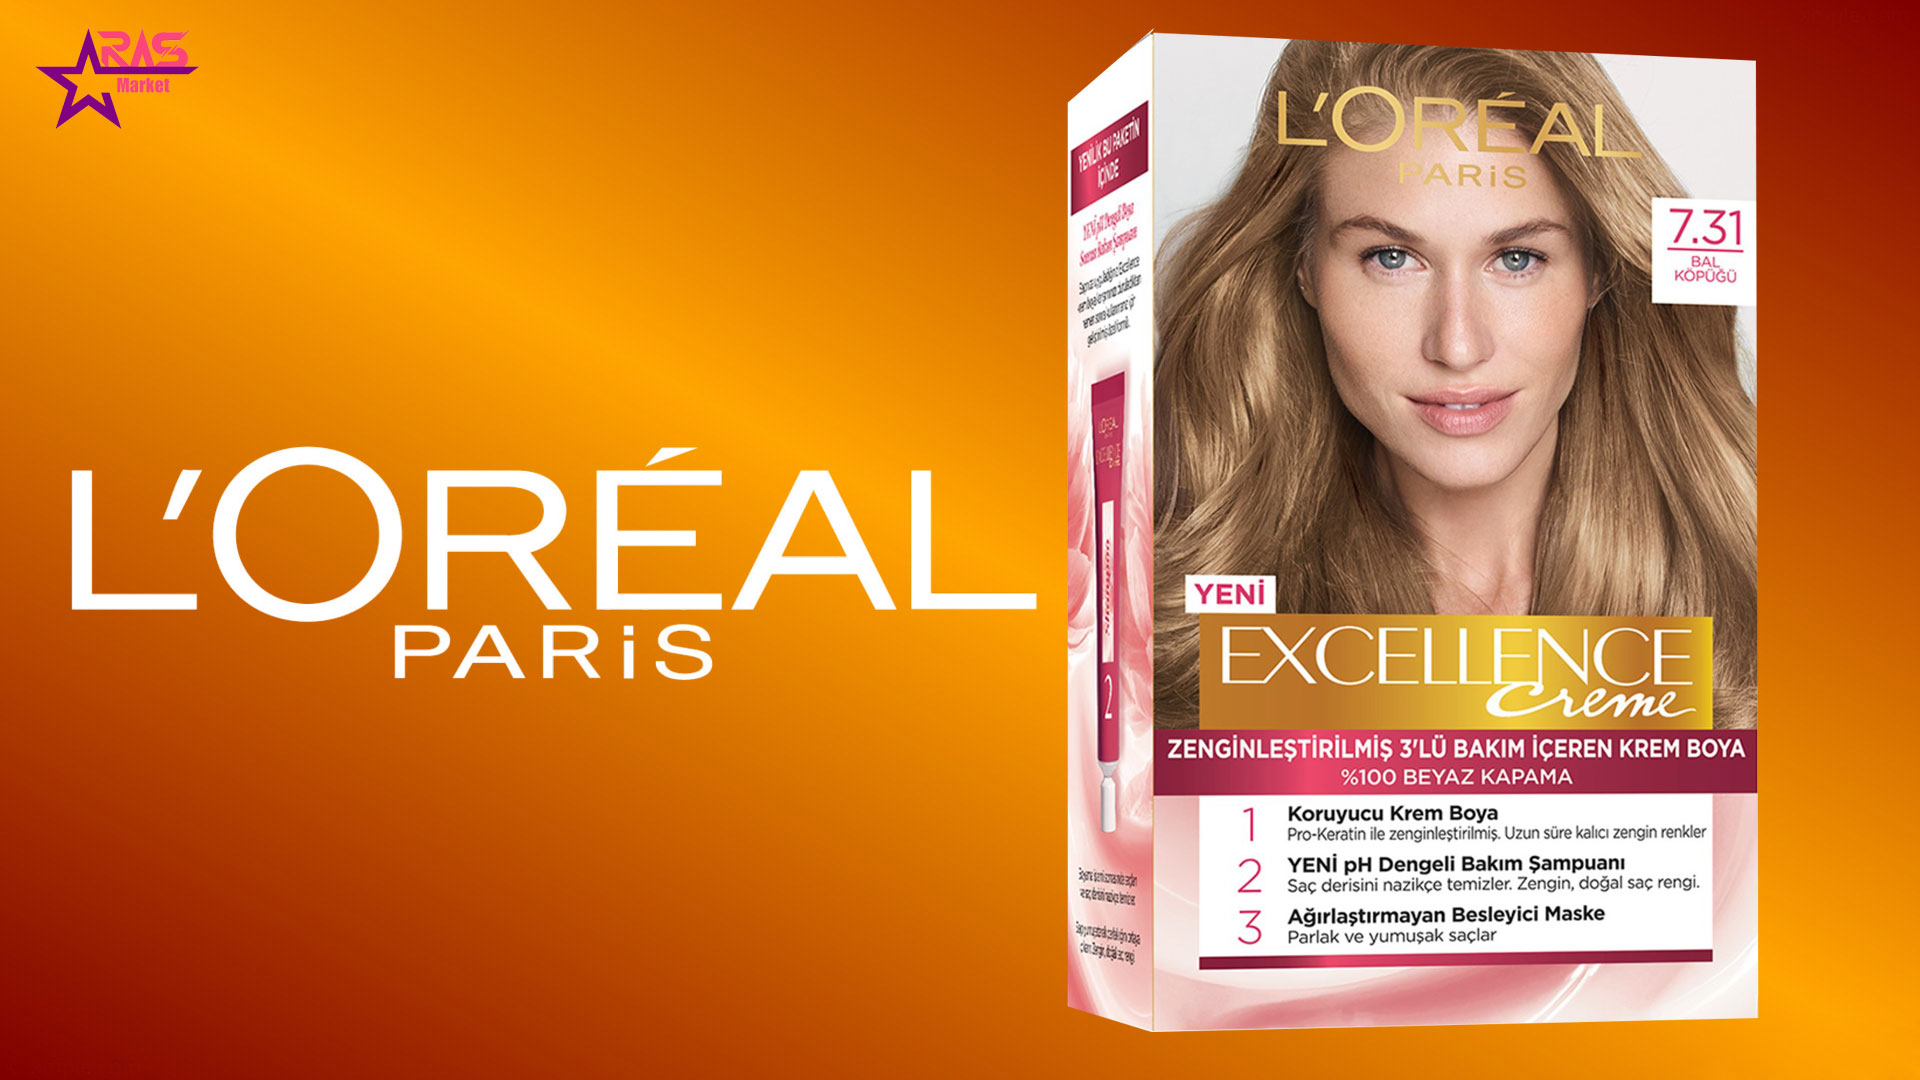 کیت رنگ مو لورآل سری Excellence شماره 7.31 ، خرید اینترنتی محصولات شوینده و بهداشتی ف بهداشت بانوان